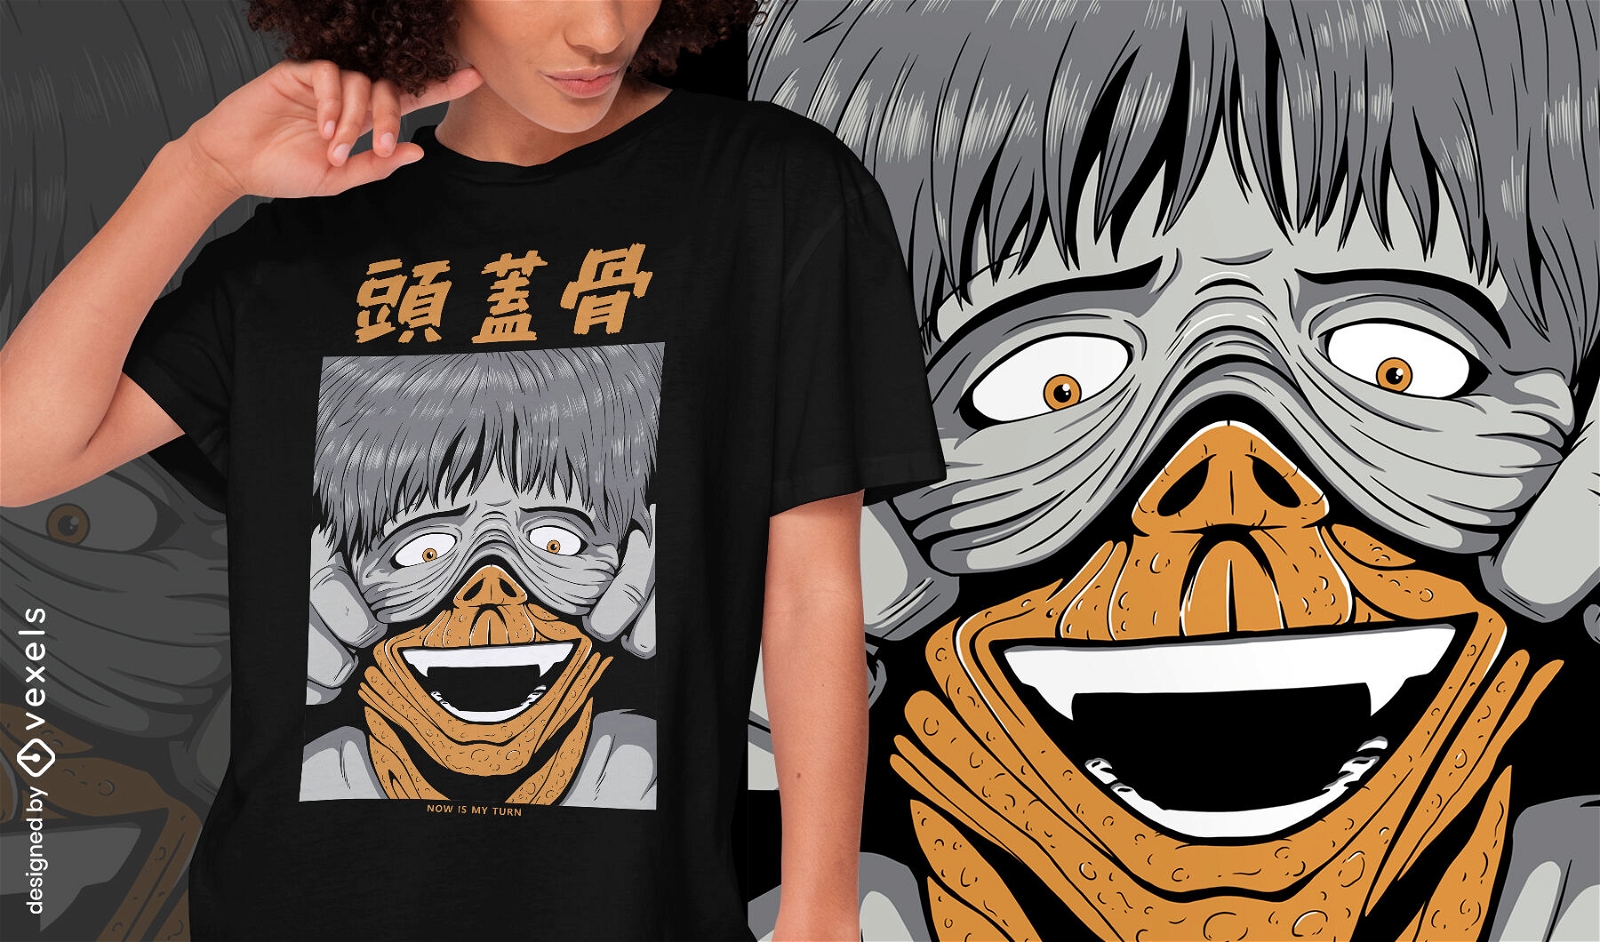 Dise?o de camiseta psd de criatura japonesa espeluznante